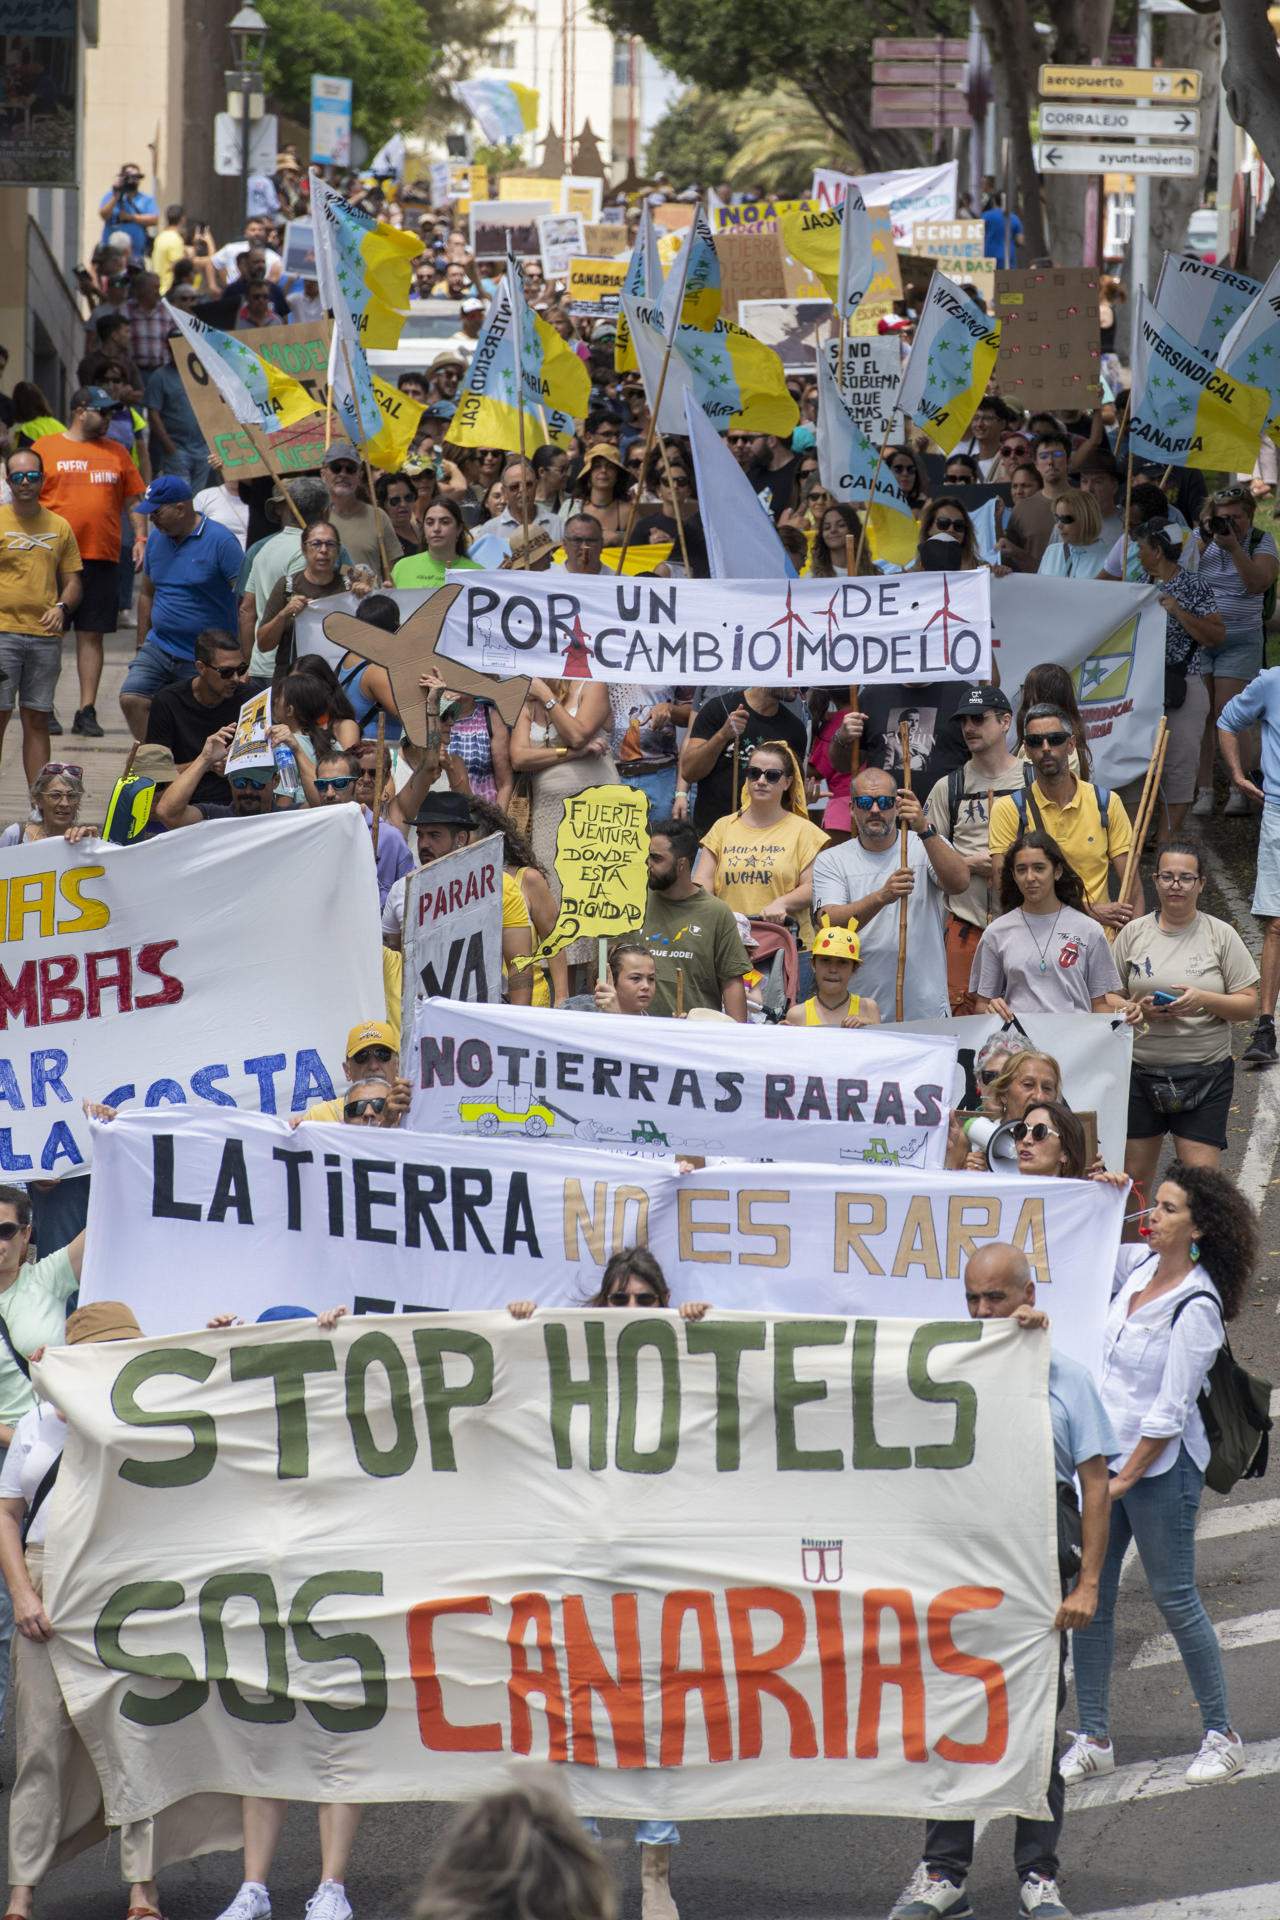 Marea humana en Canarias contra la masificación turística y por un giro del modelo económico